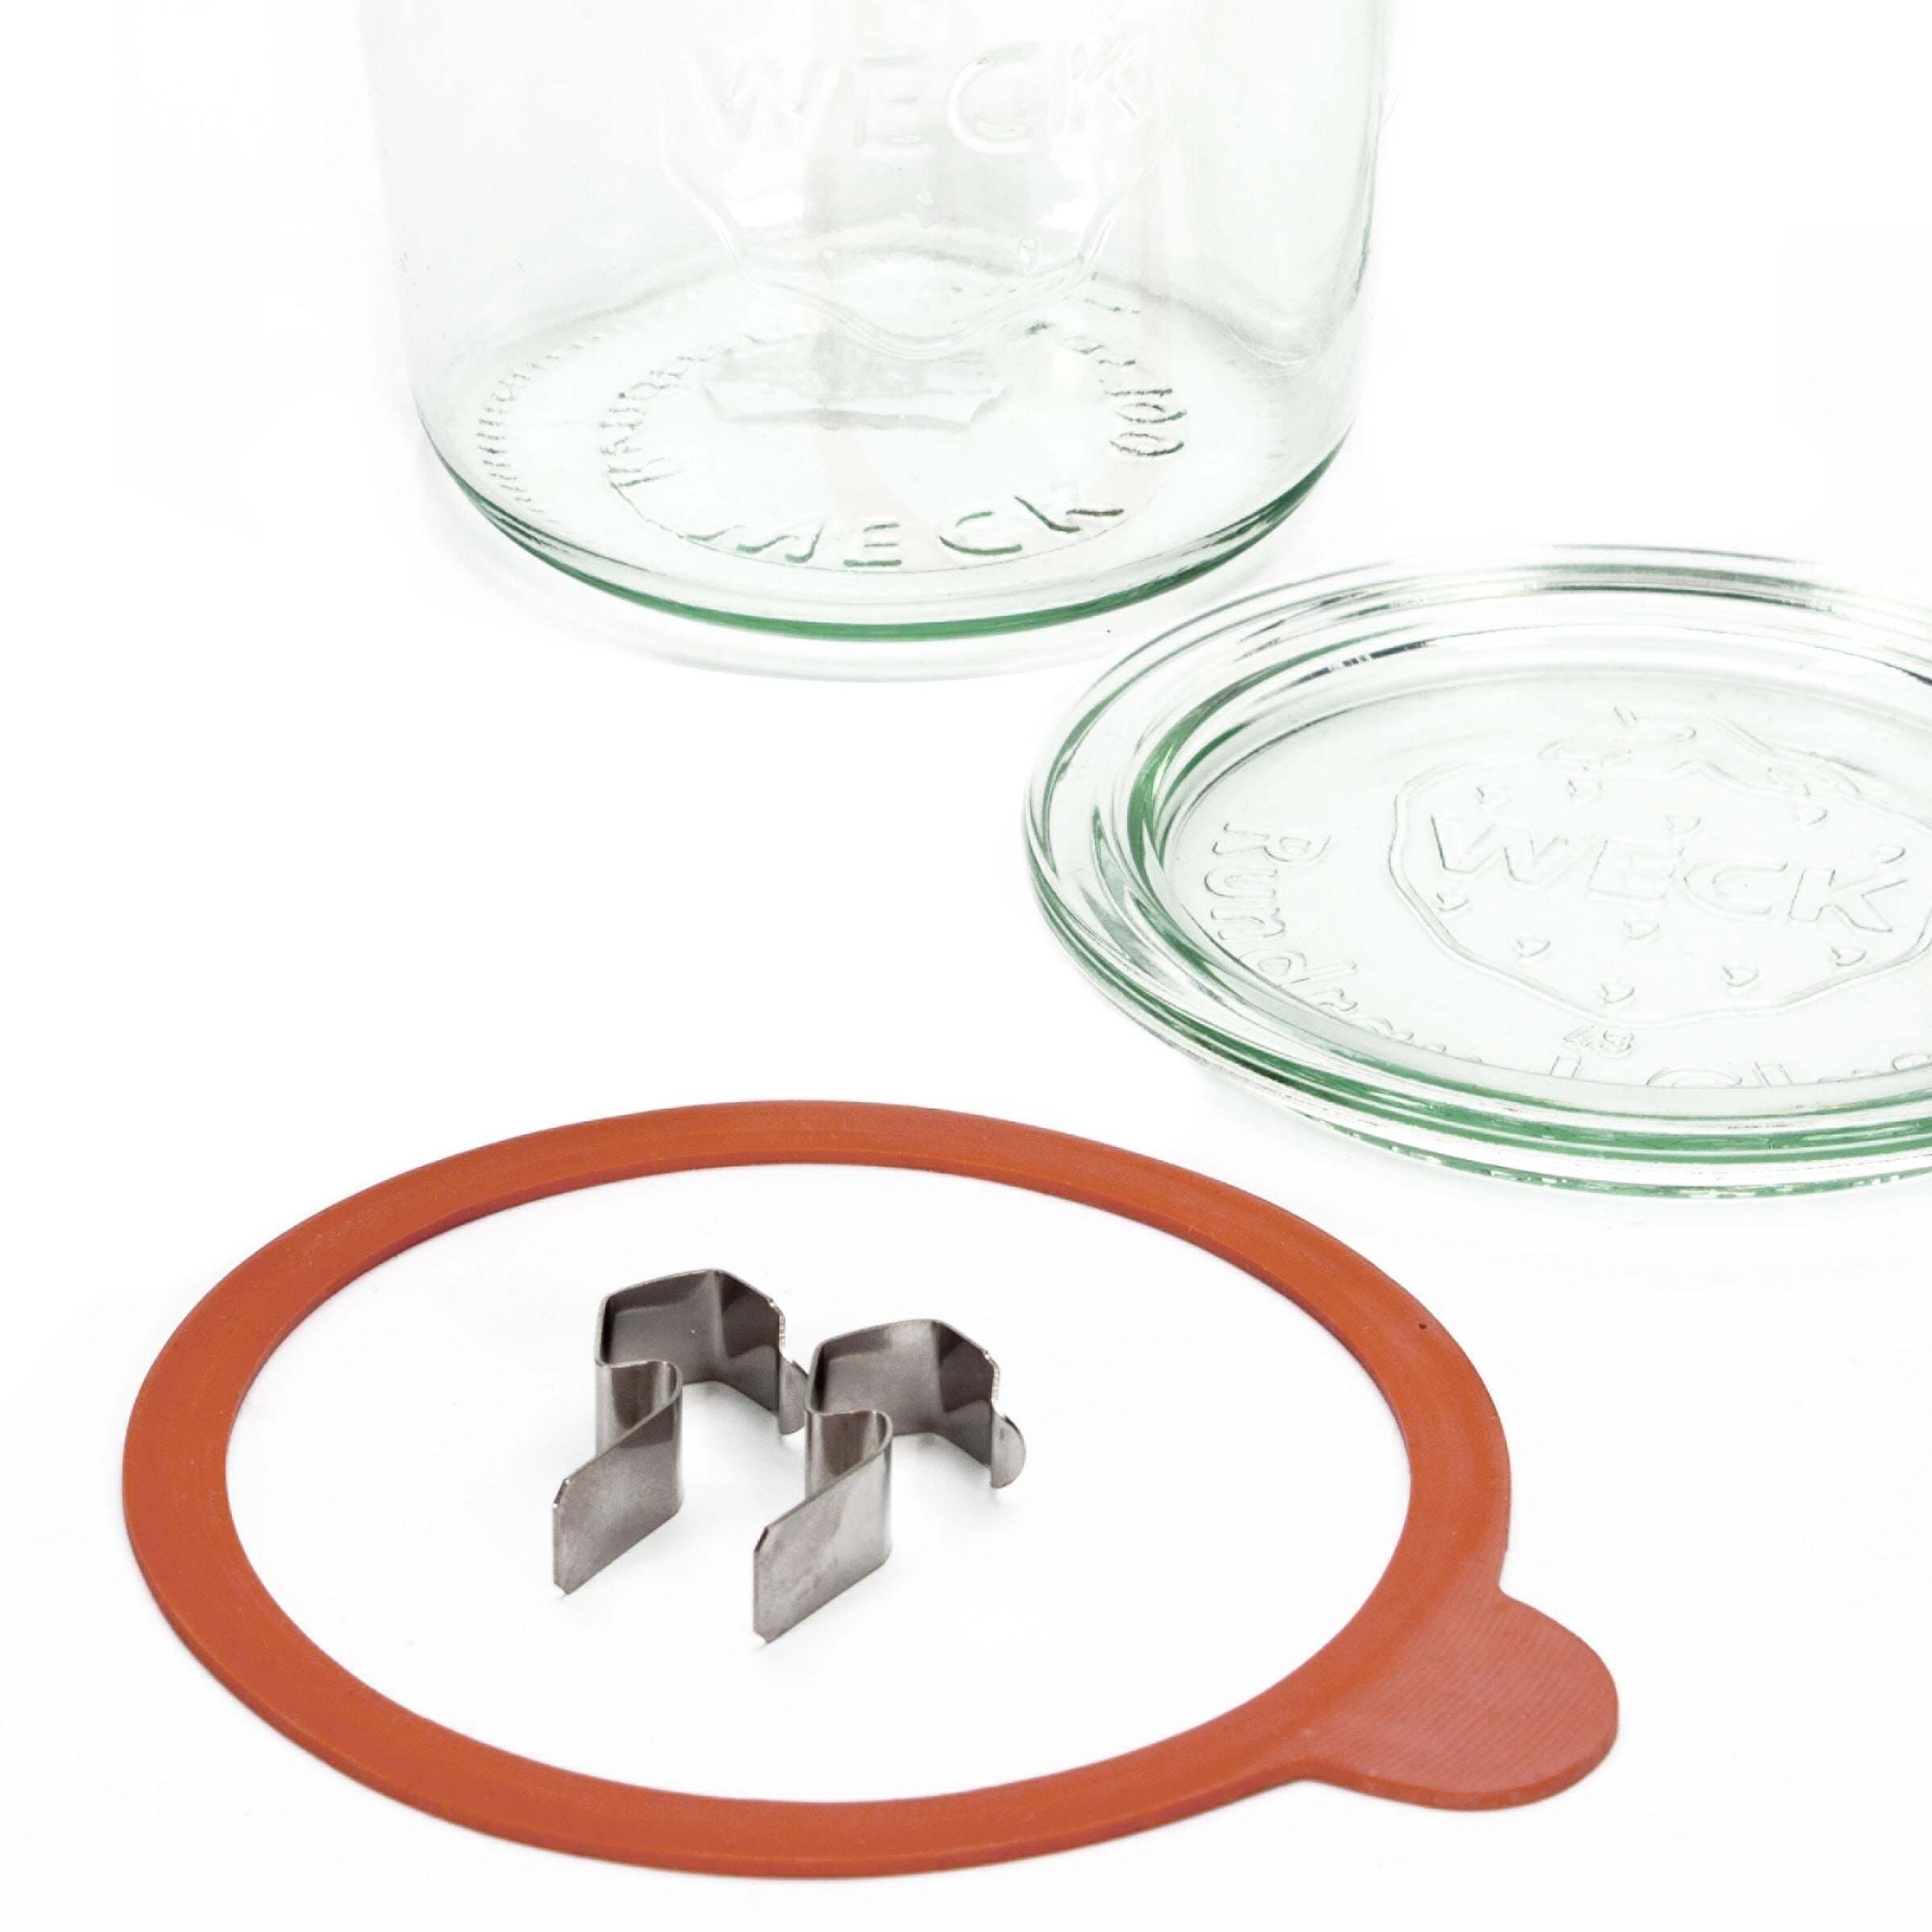 Einkochgläser 220ml, Mini-Tulpenform Einmachglas BUTLERS 6x Glas WECK